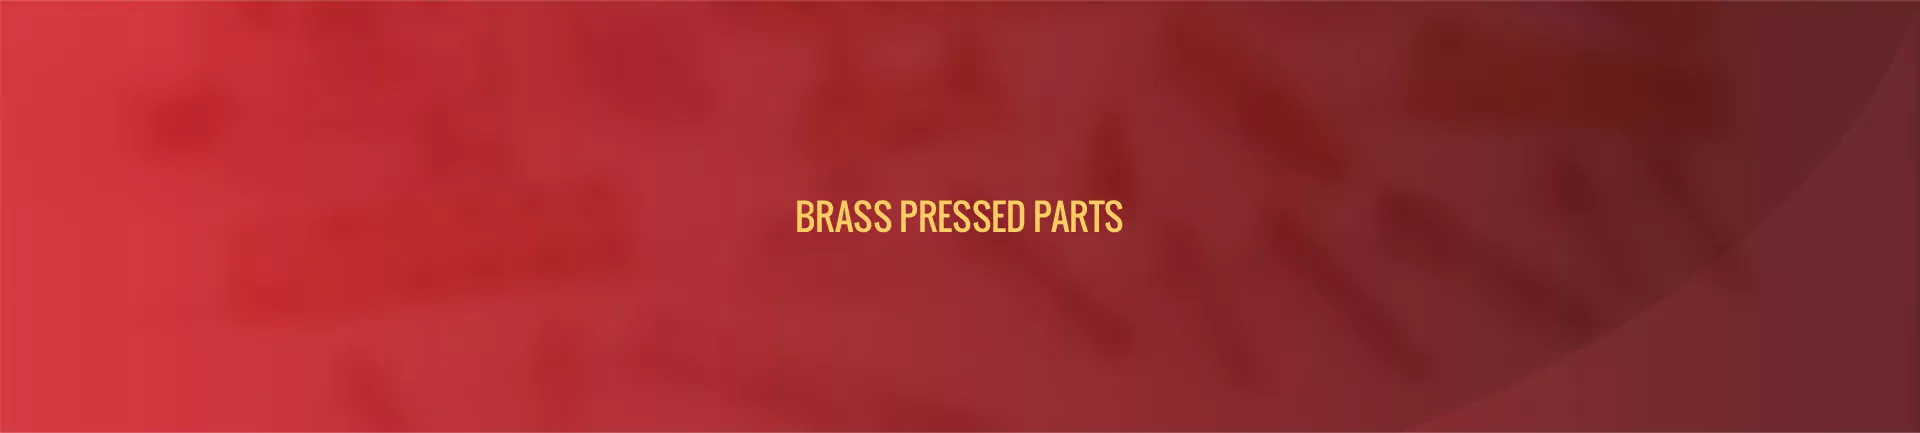 brass-pressed-parts-banner